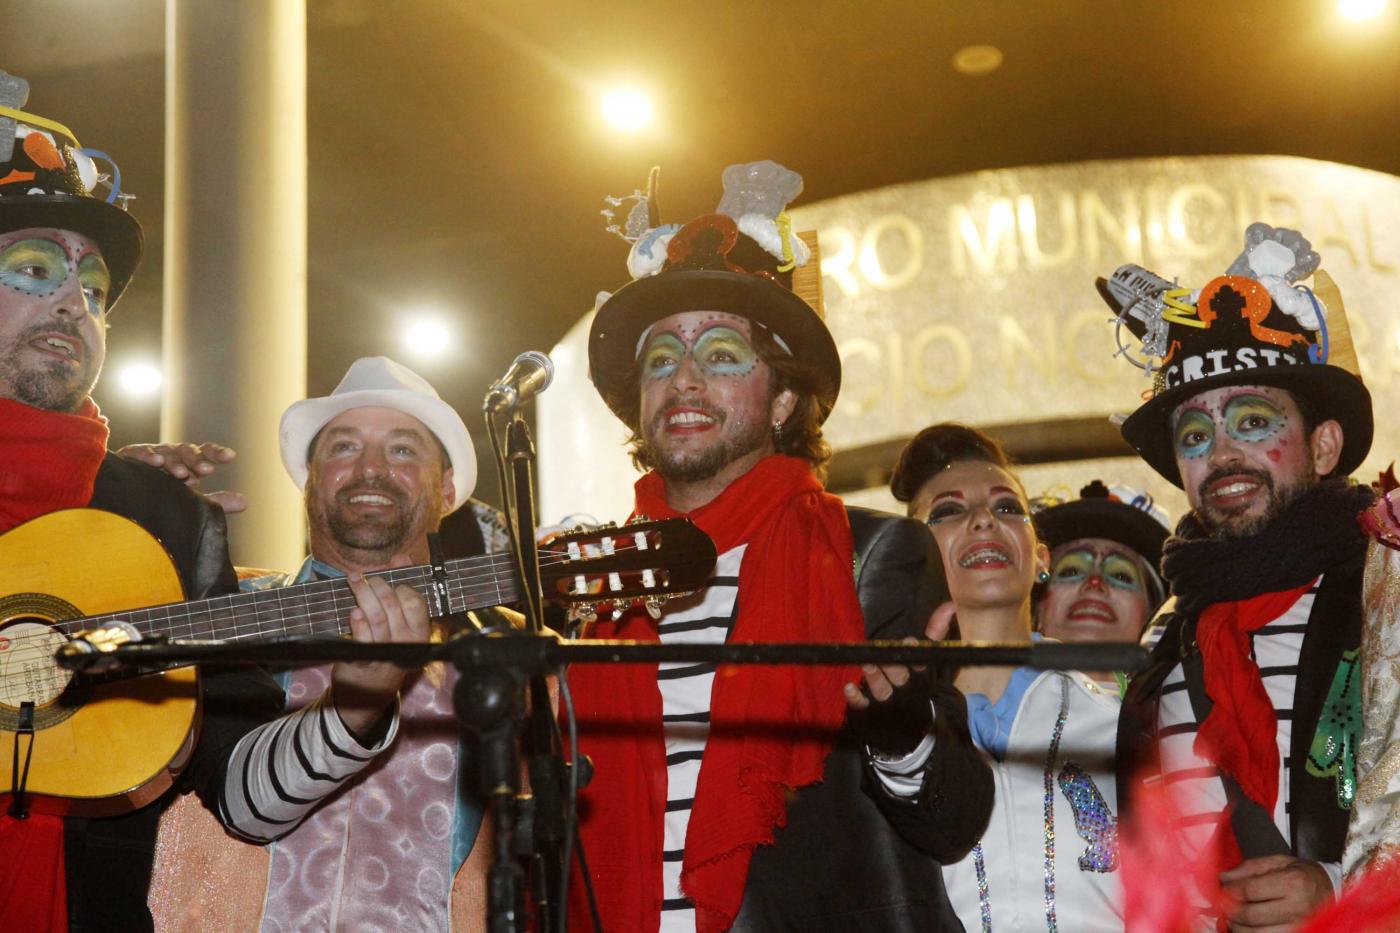 Empresarios de Isla Cristina entienden la suspensión del carnaval pero supone “un palo más”